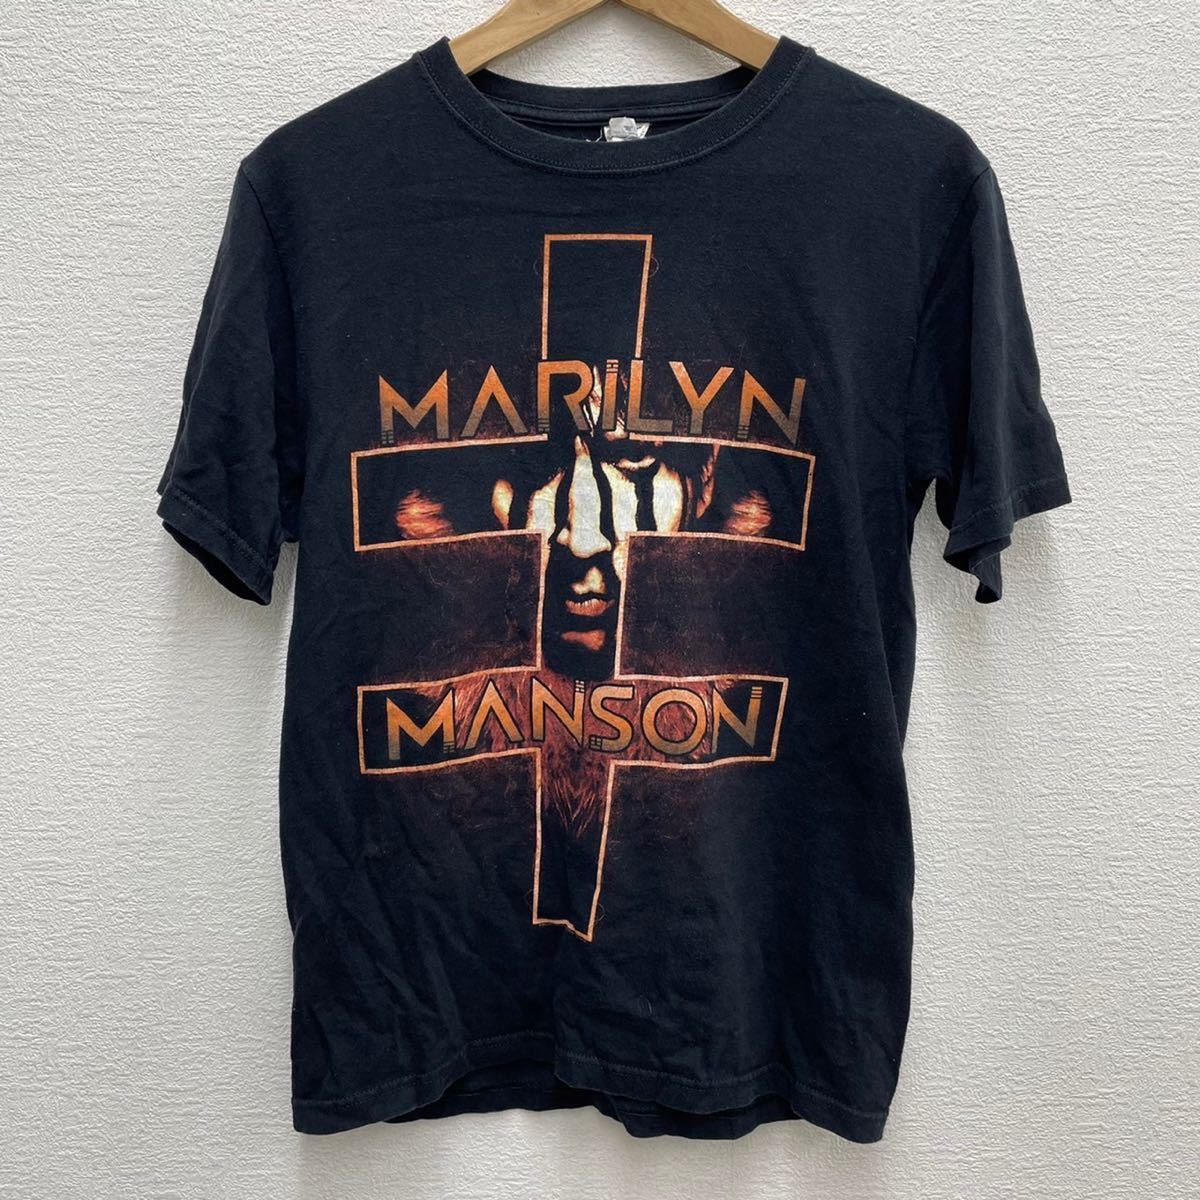 女の子向けプレゼント集結 マリリンマンソン MANSON MARILYN 半袖 S ブラック anvil Tシャツ ツアー ロック Tシャツ